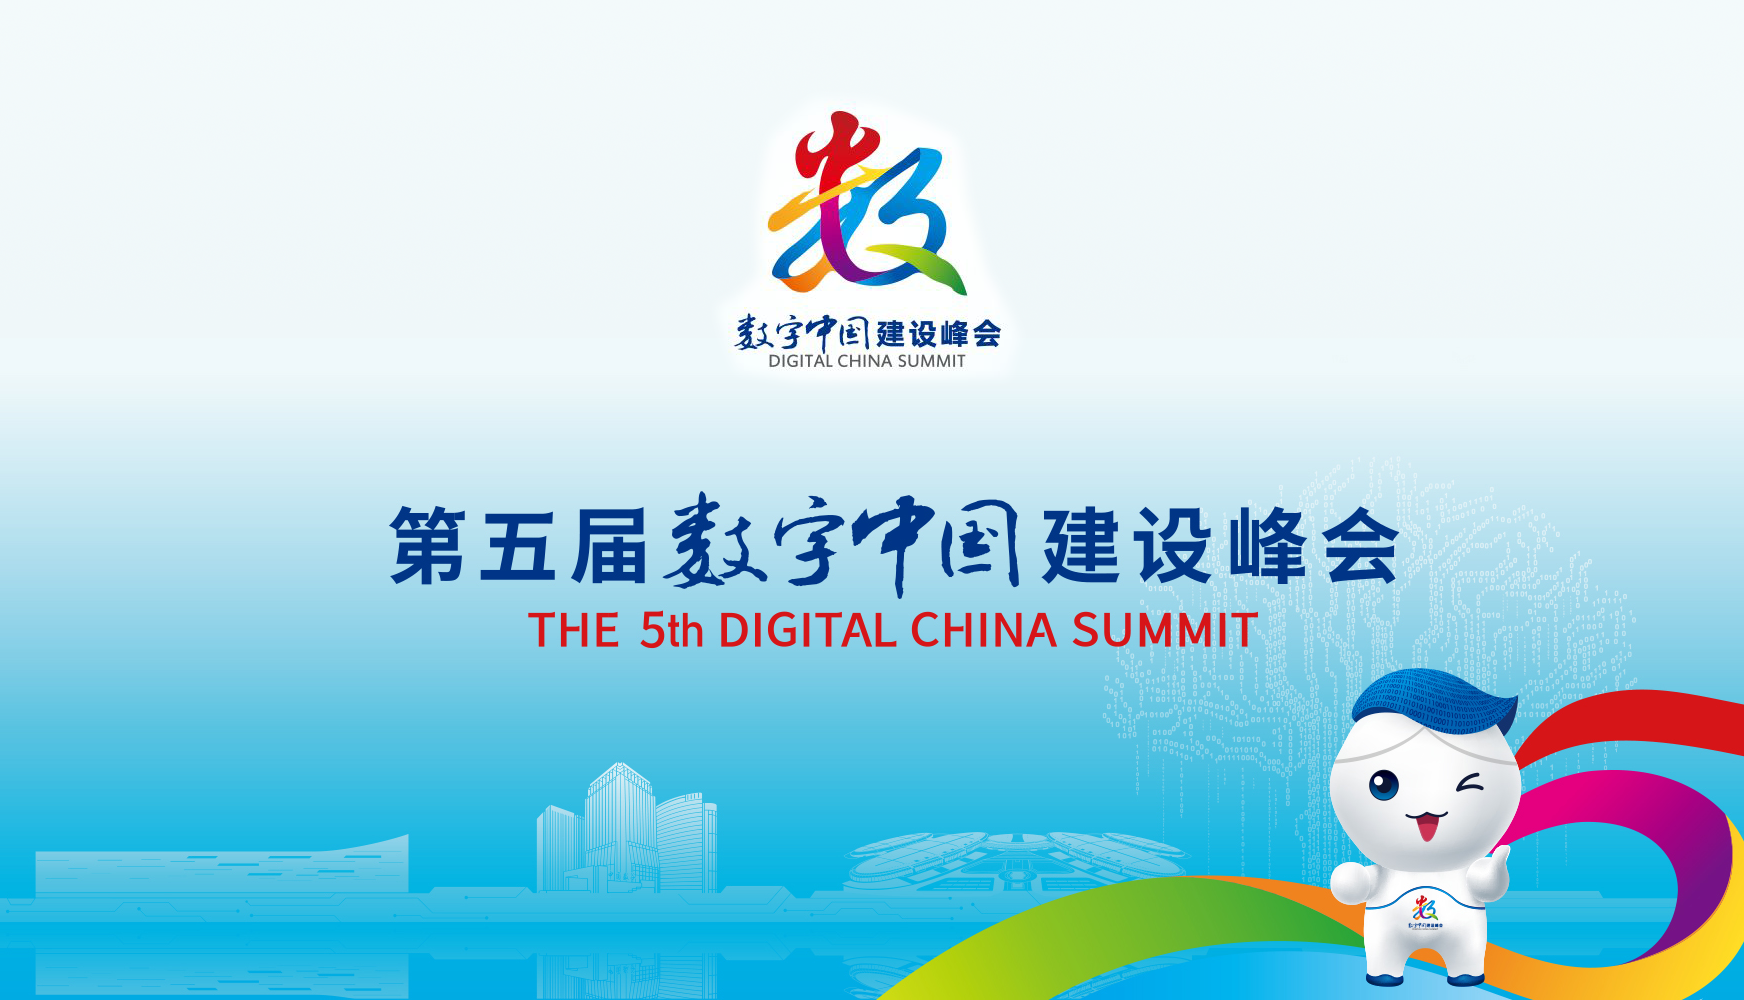 【专题】第五届数字中国建设峰会